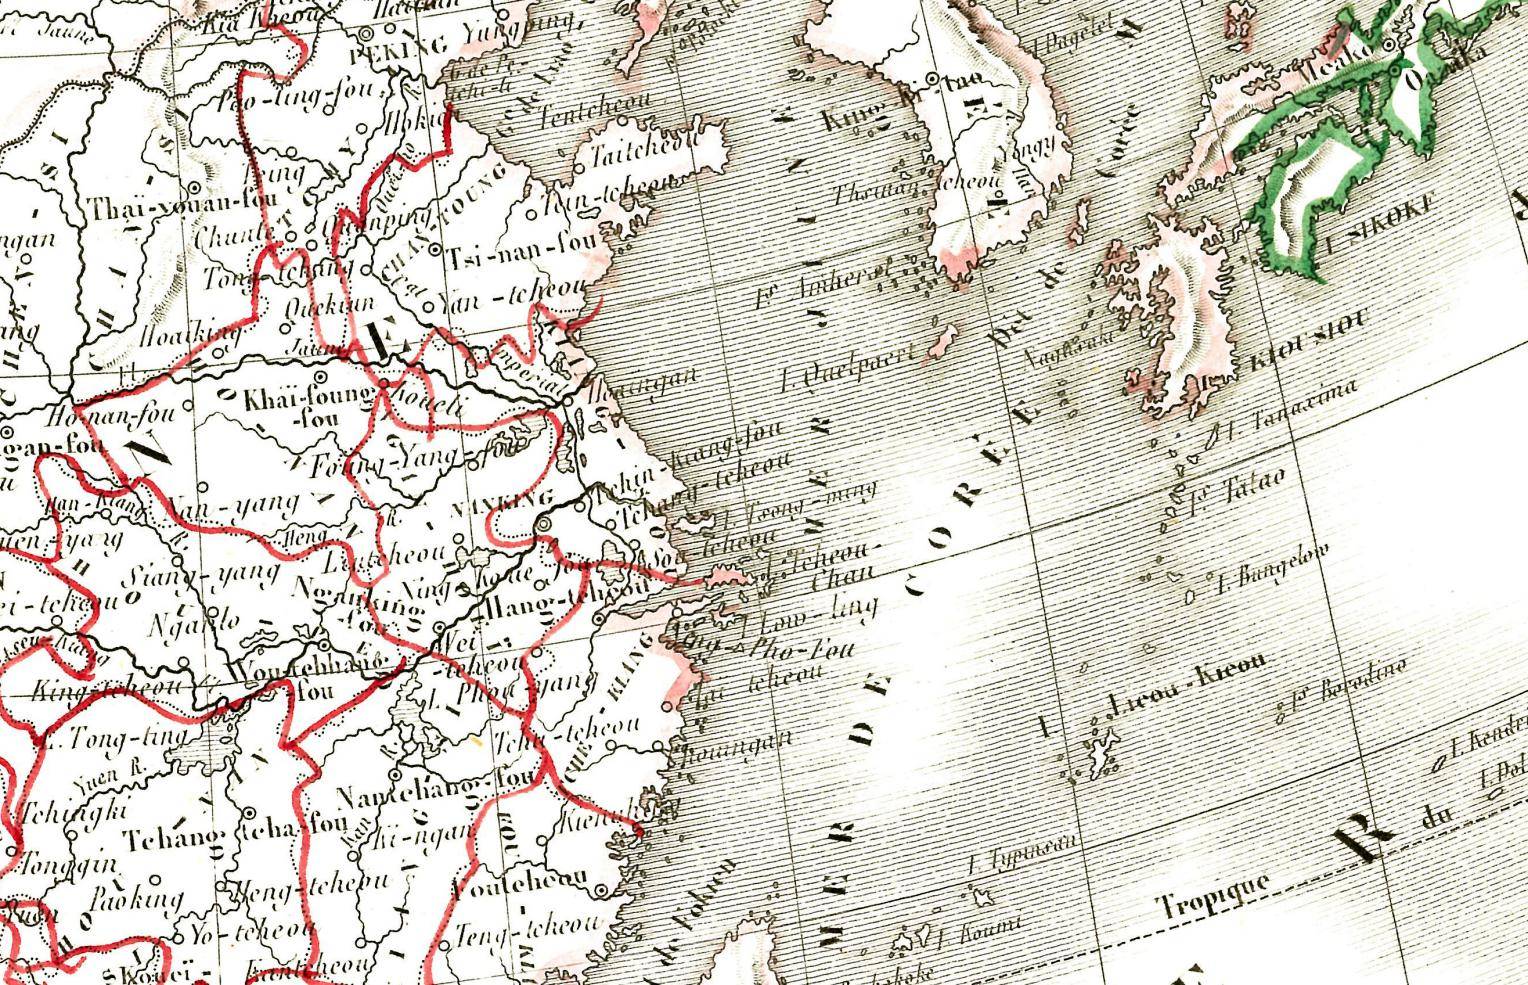 法国叫malte brun的地理学家有两位,一位是conrad malte-brun (1775